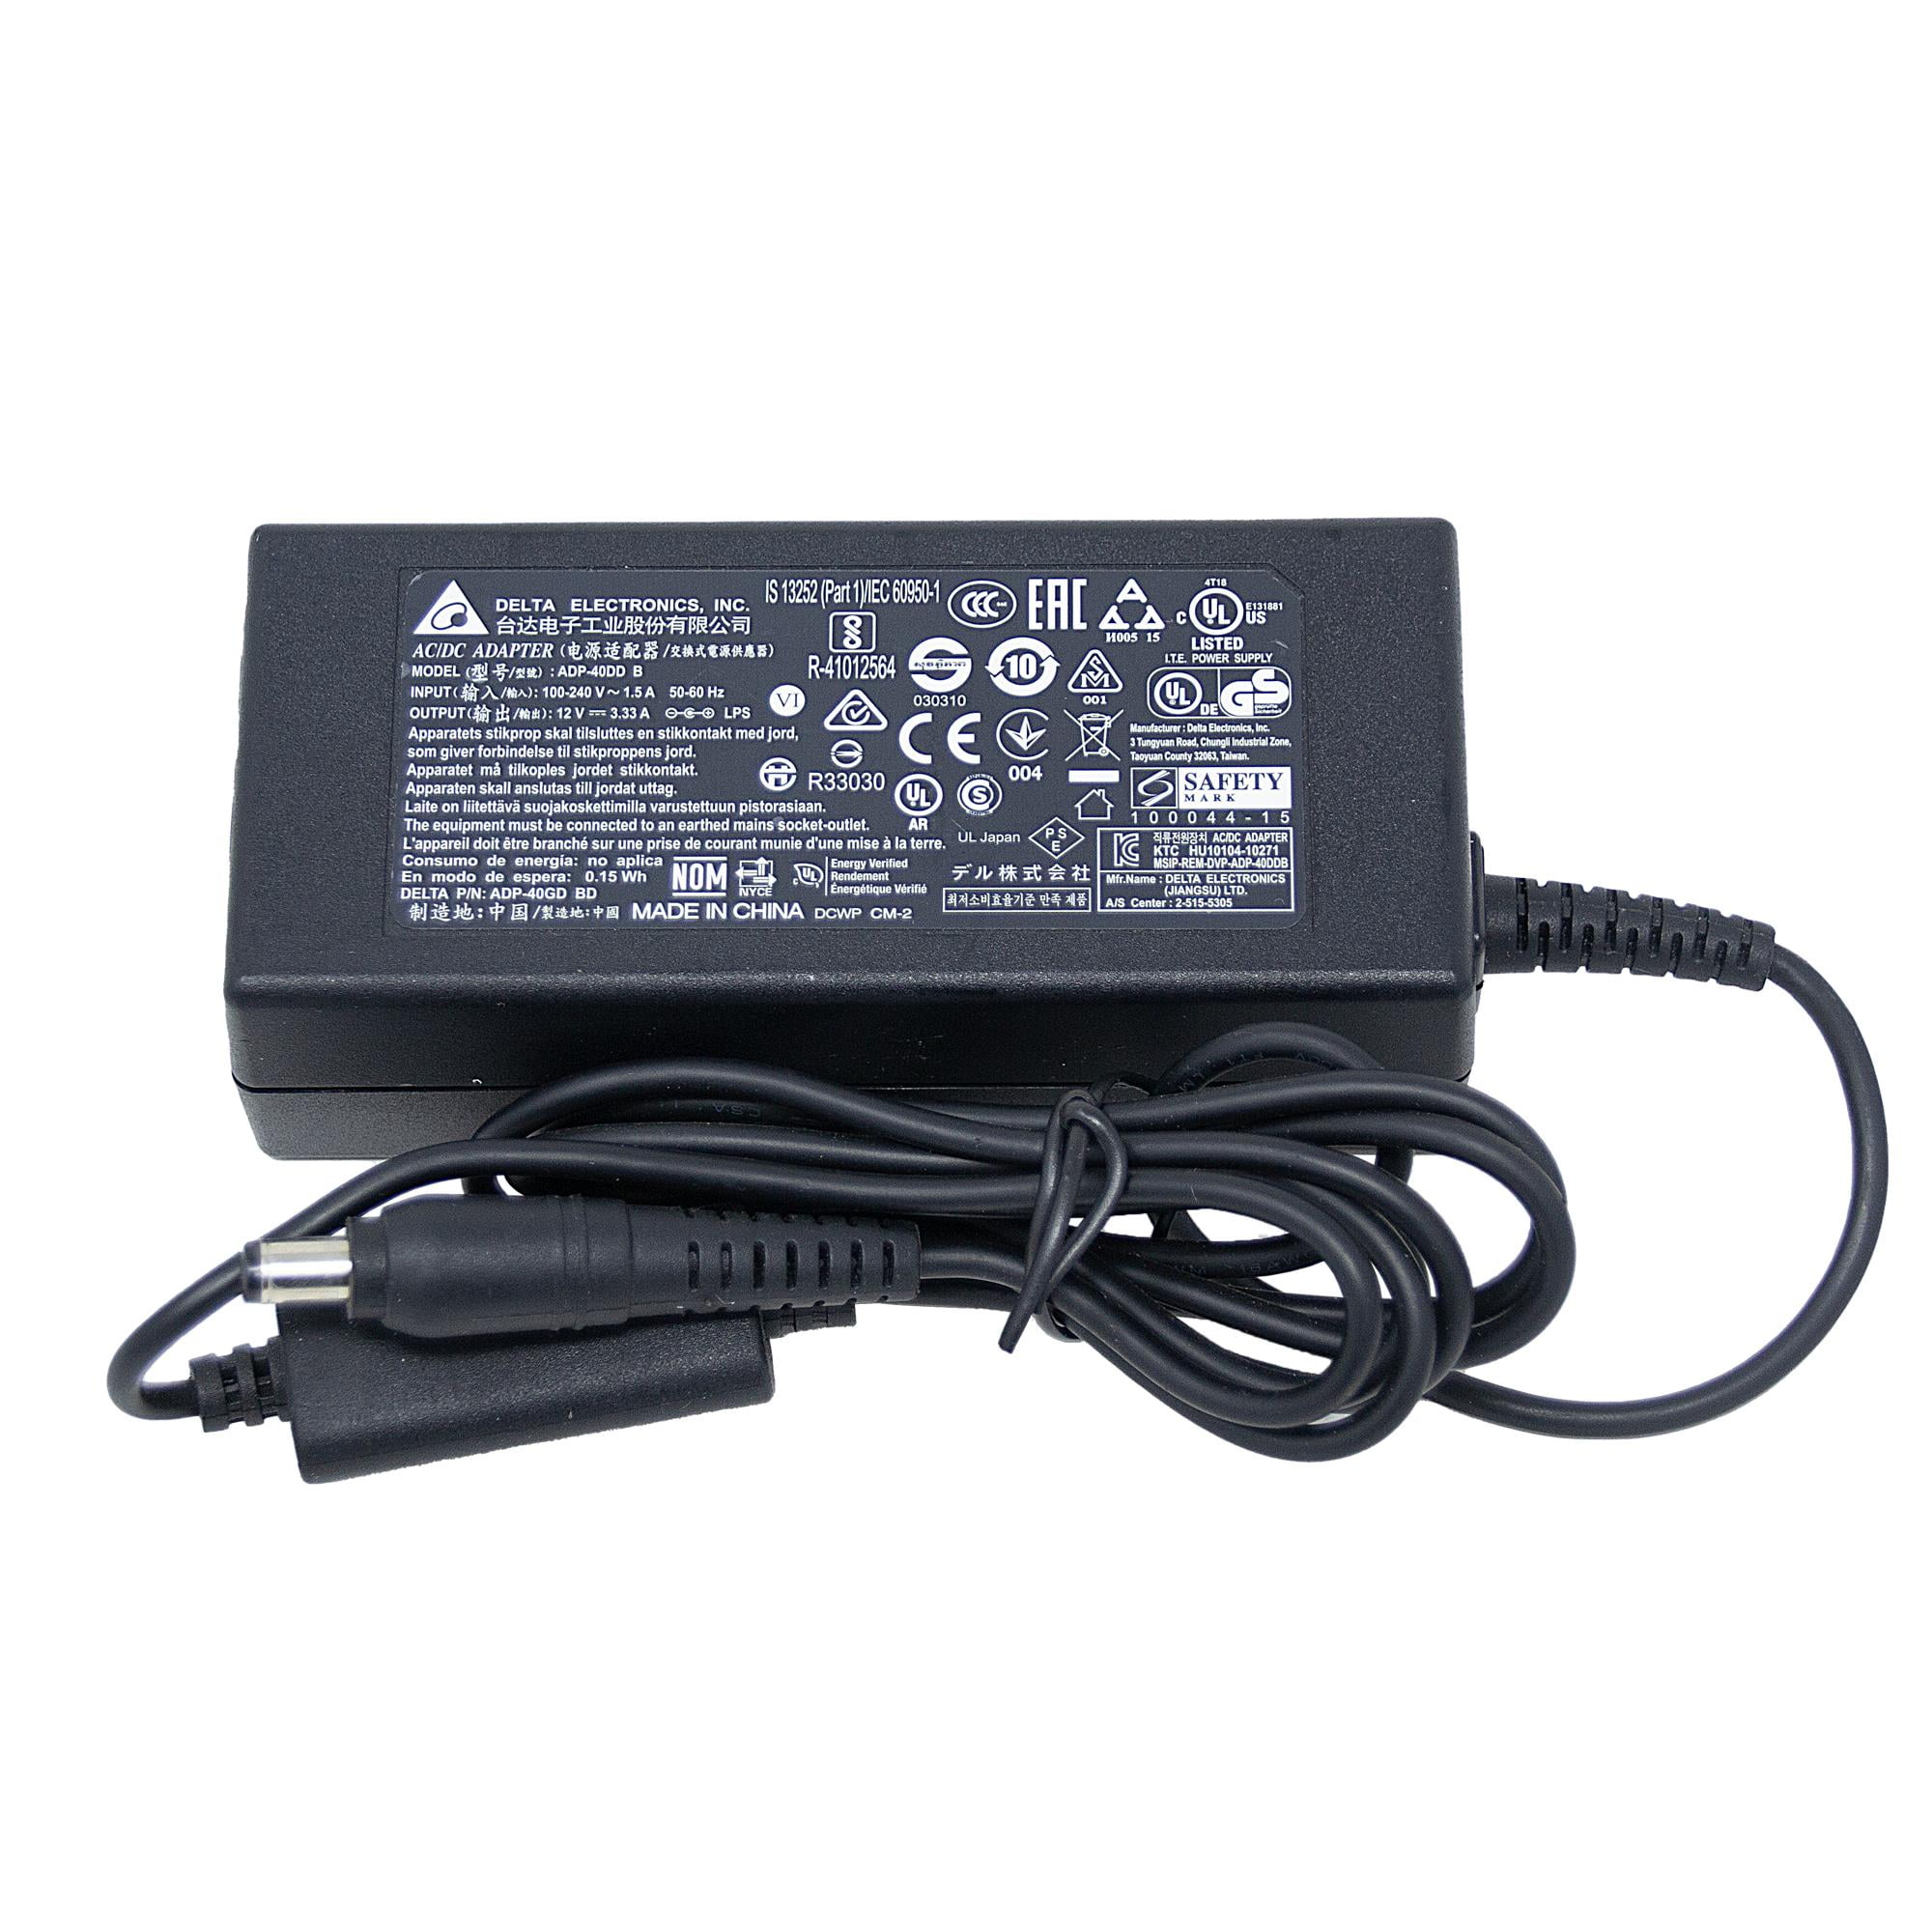 Dell 12V  Monitor Power Supply AC Adapter Compatible with S2218H  S2218M S2318H S2318HN S2318HX S2318M S2318NX S2319H S2319HN S2319NX S2419H  S2419HN S2419NX S2719H S2719HN S2719NX 